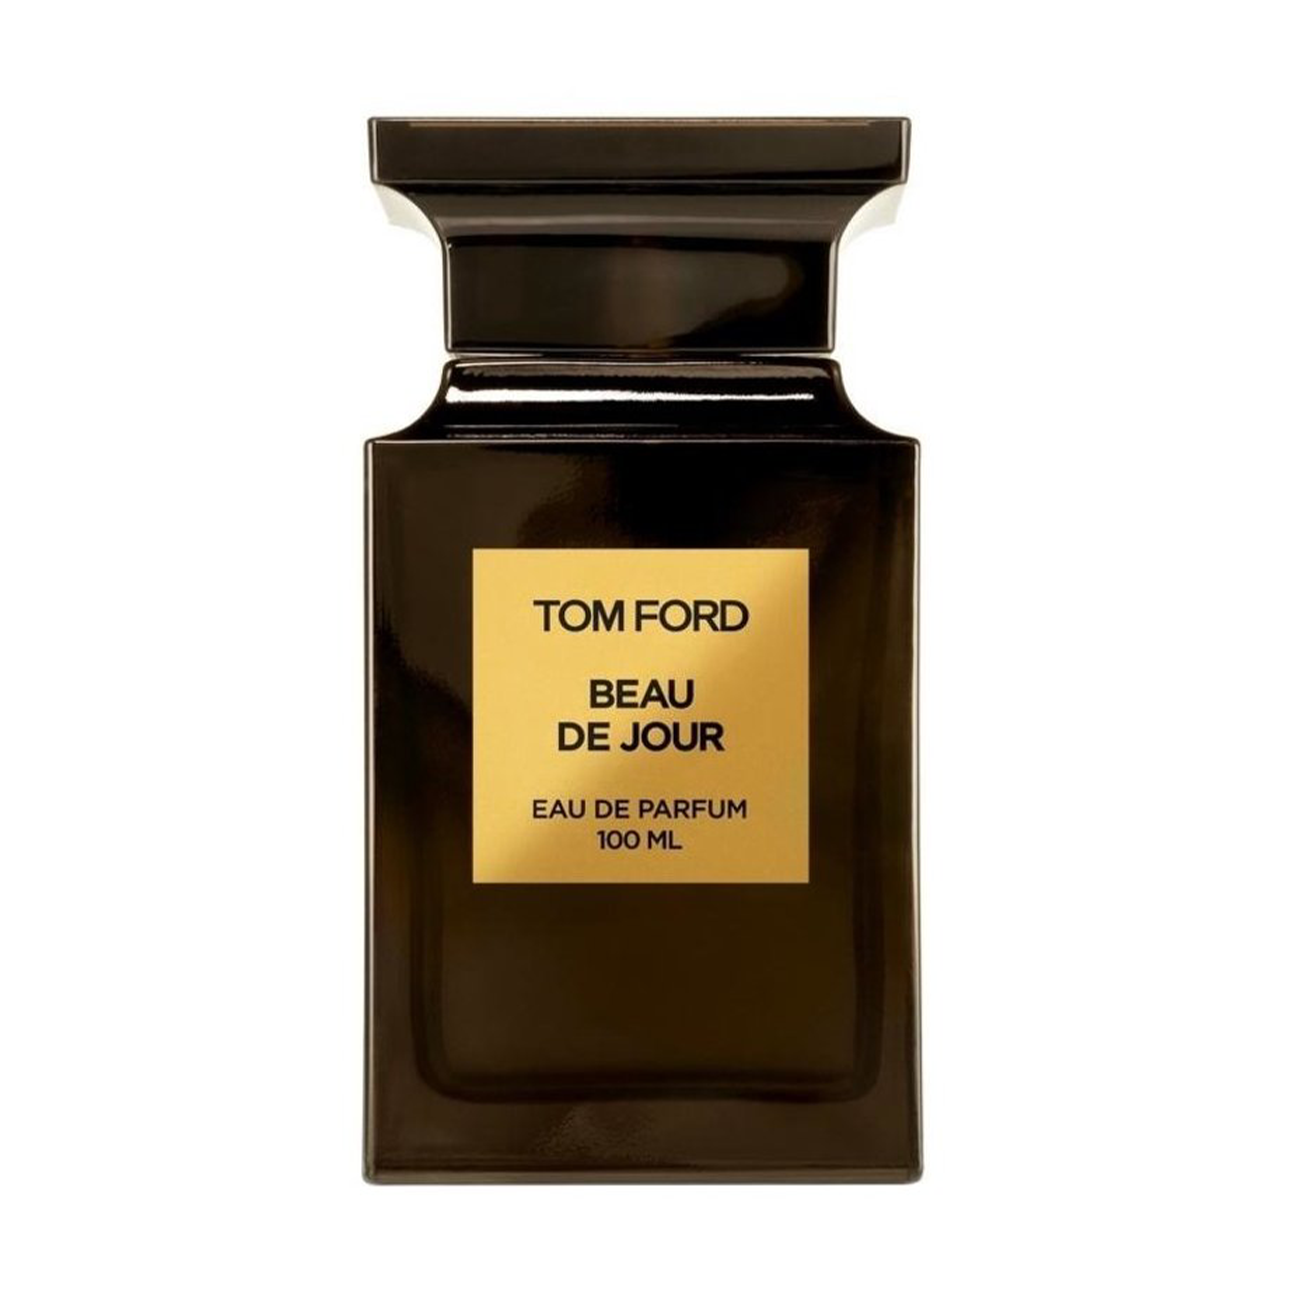 Tom Ford Beau de Jour Apa de parfum 100ml